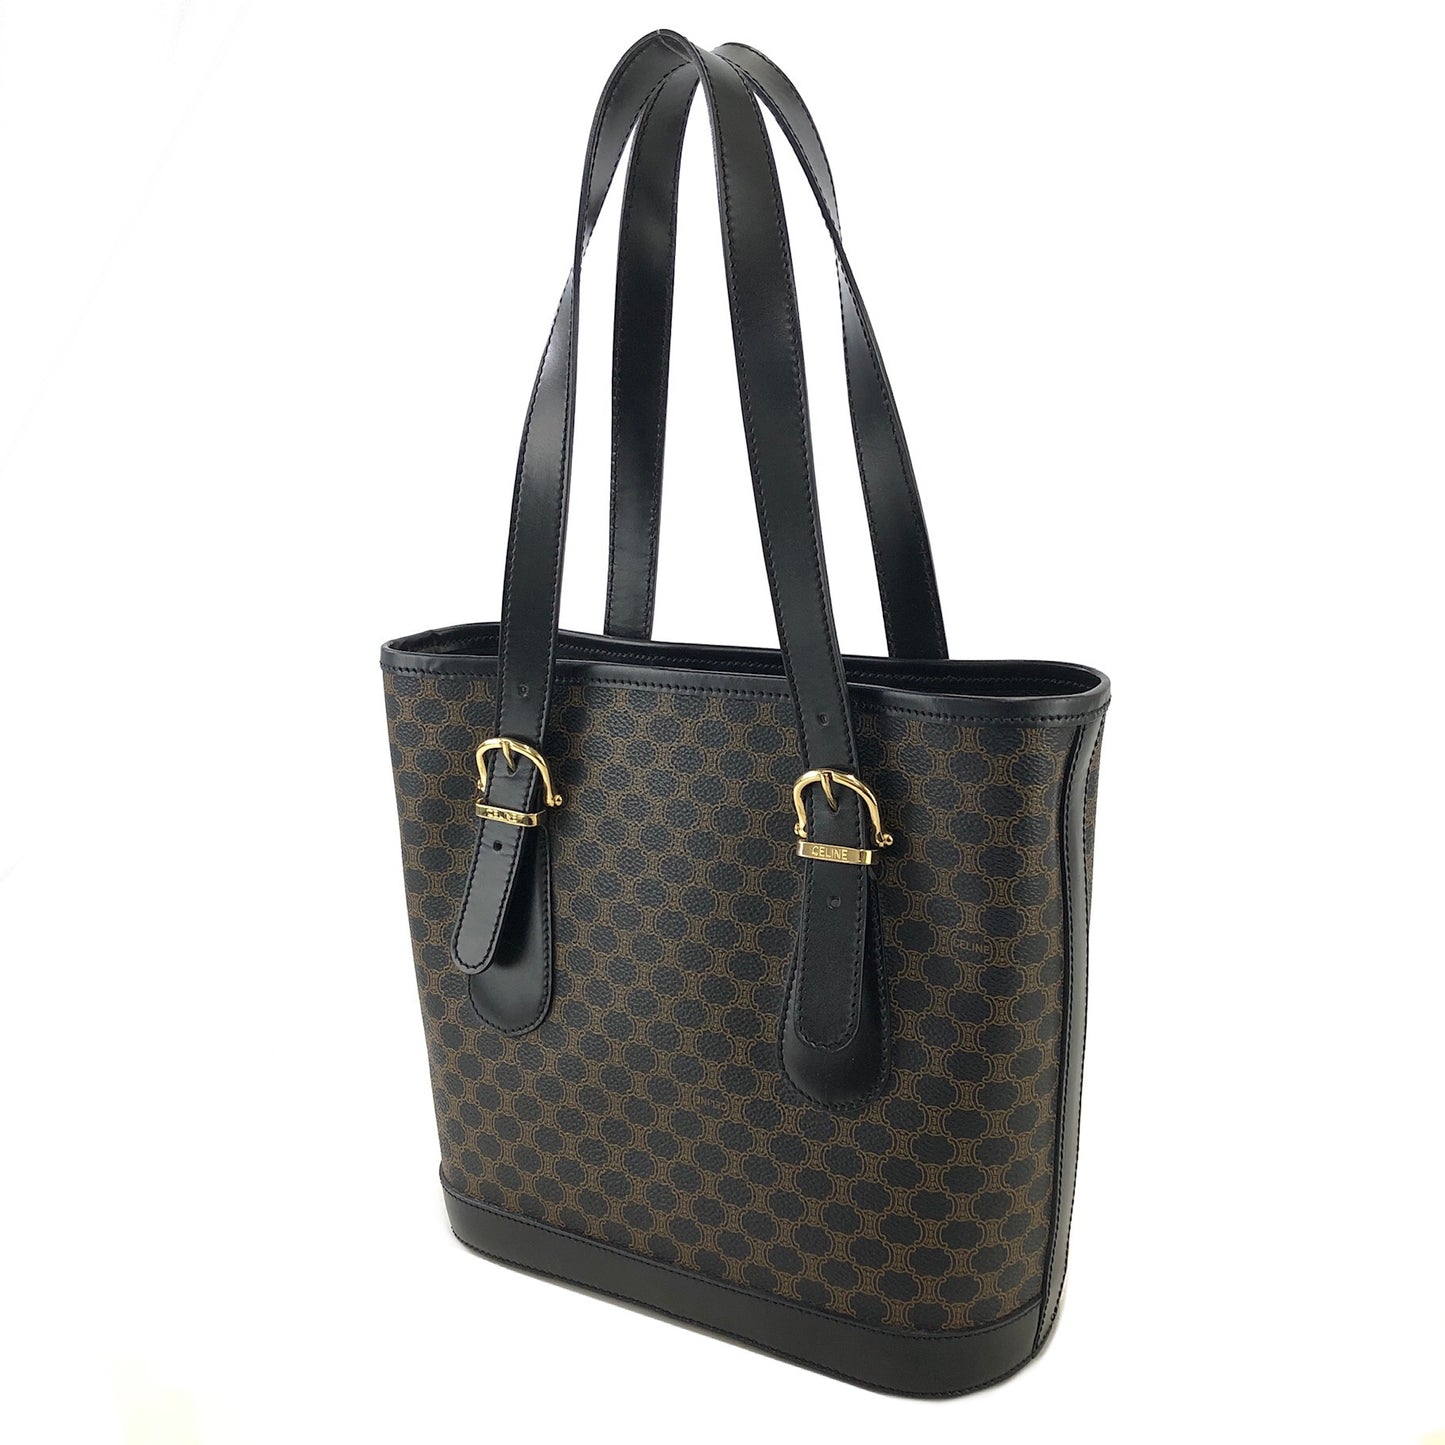 CELINE Macadam Leather Handbag Totebag Black Vintage at6psz